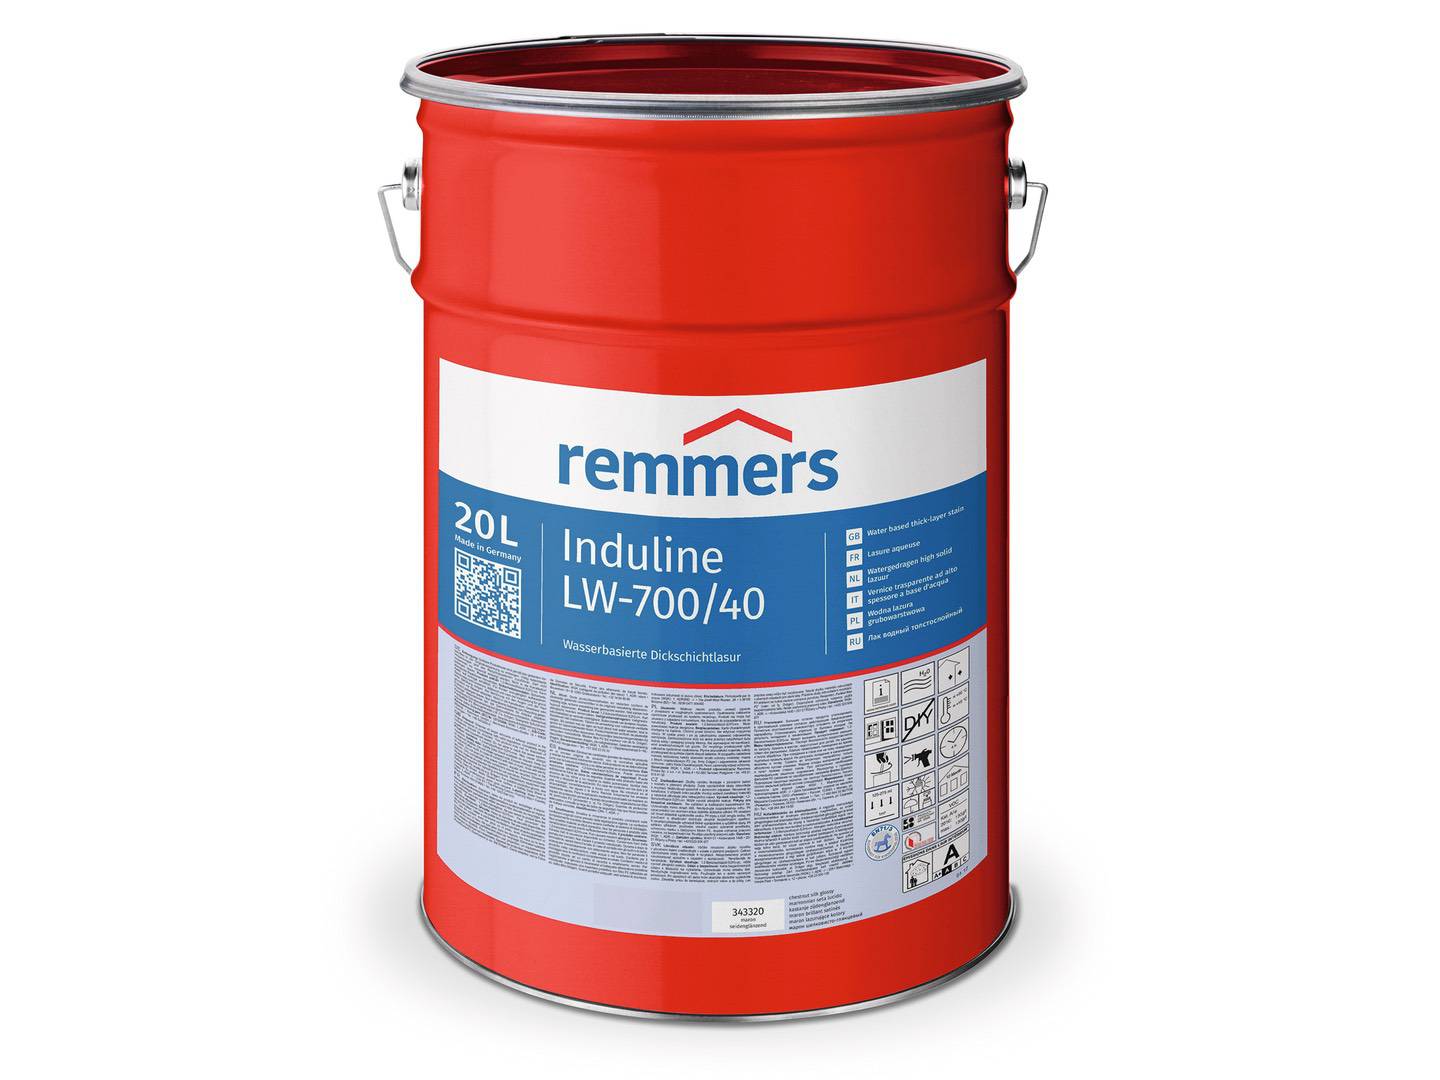 REMMERS Induline LW-700 palisander (RC-750) seidenglänzend 5 l